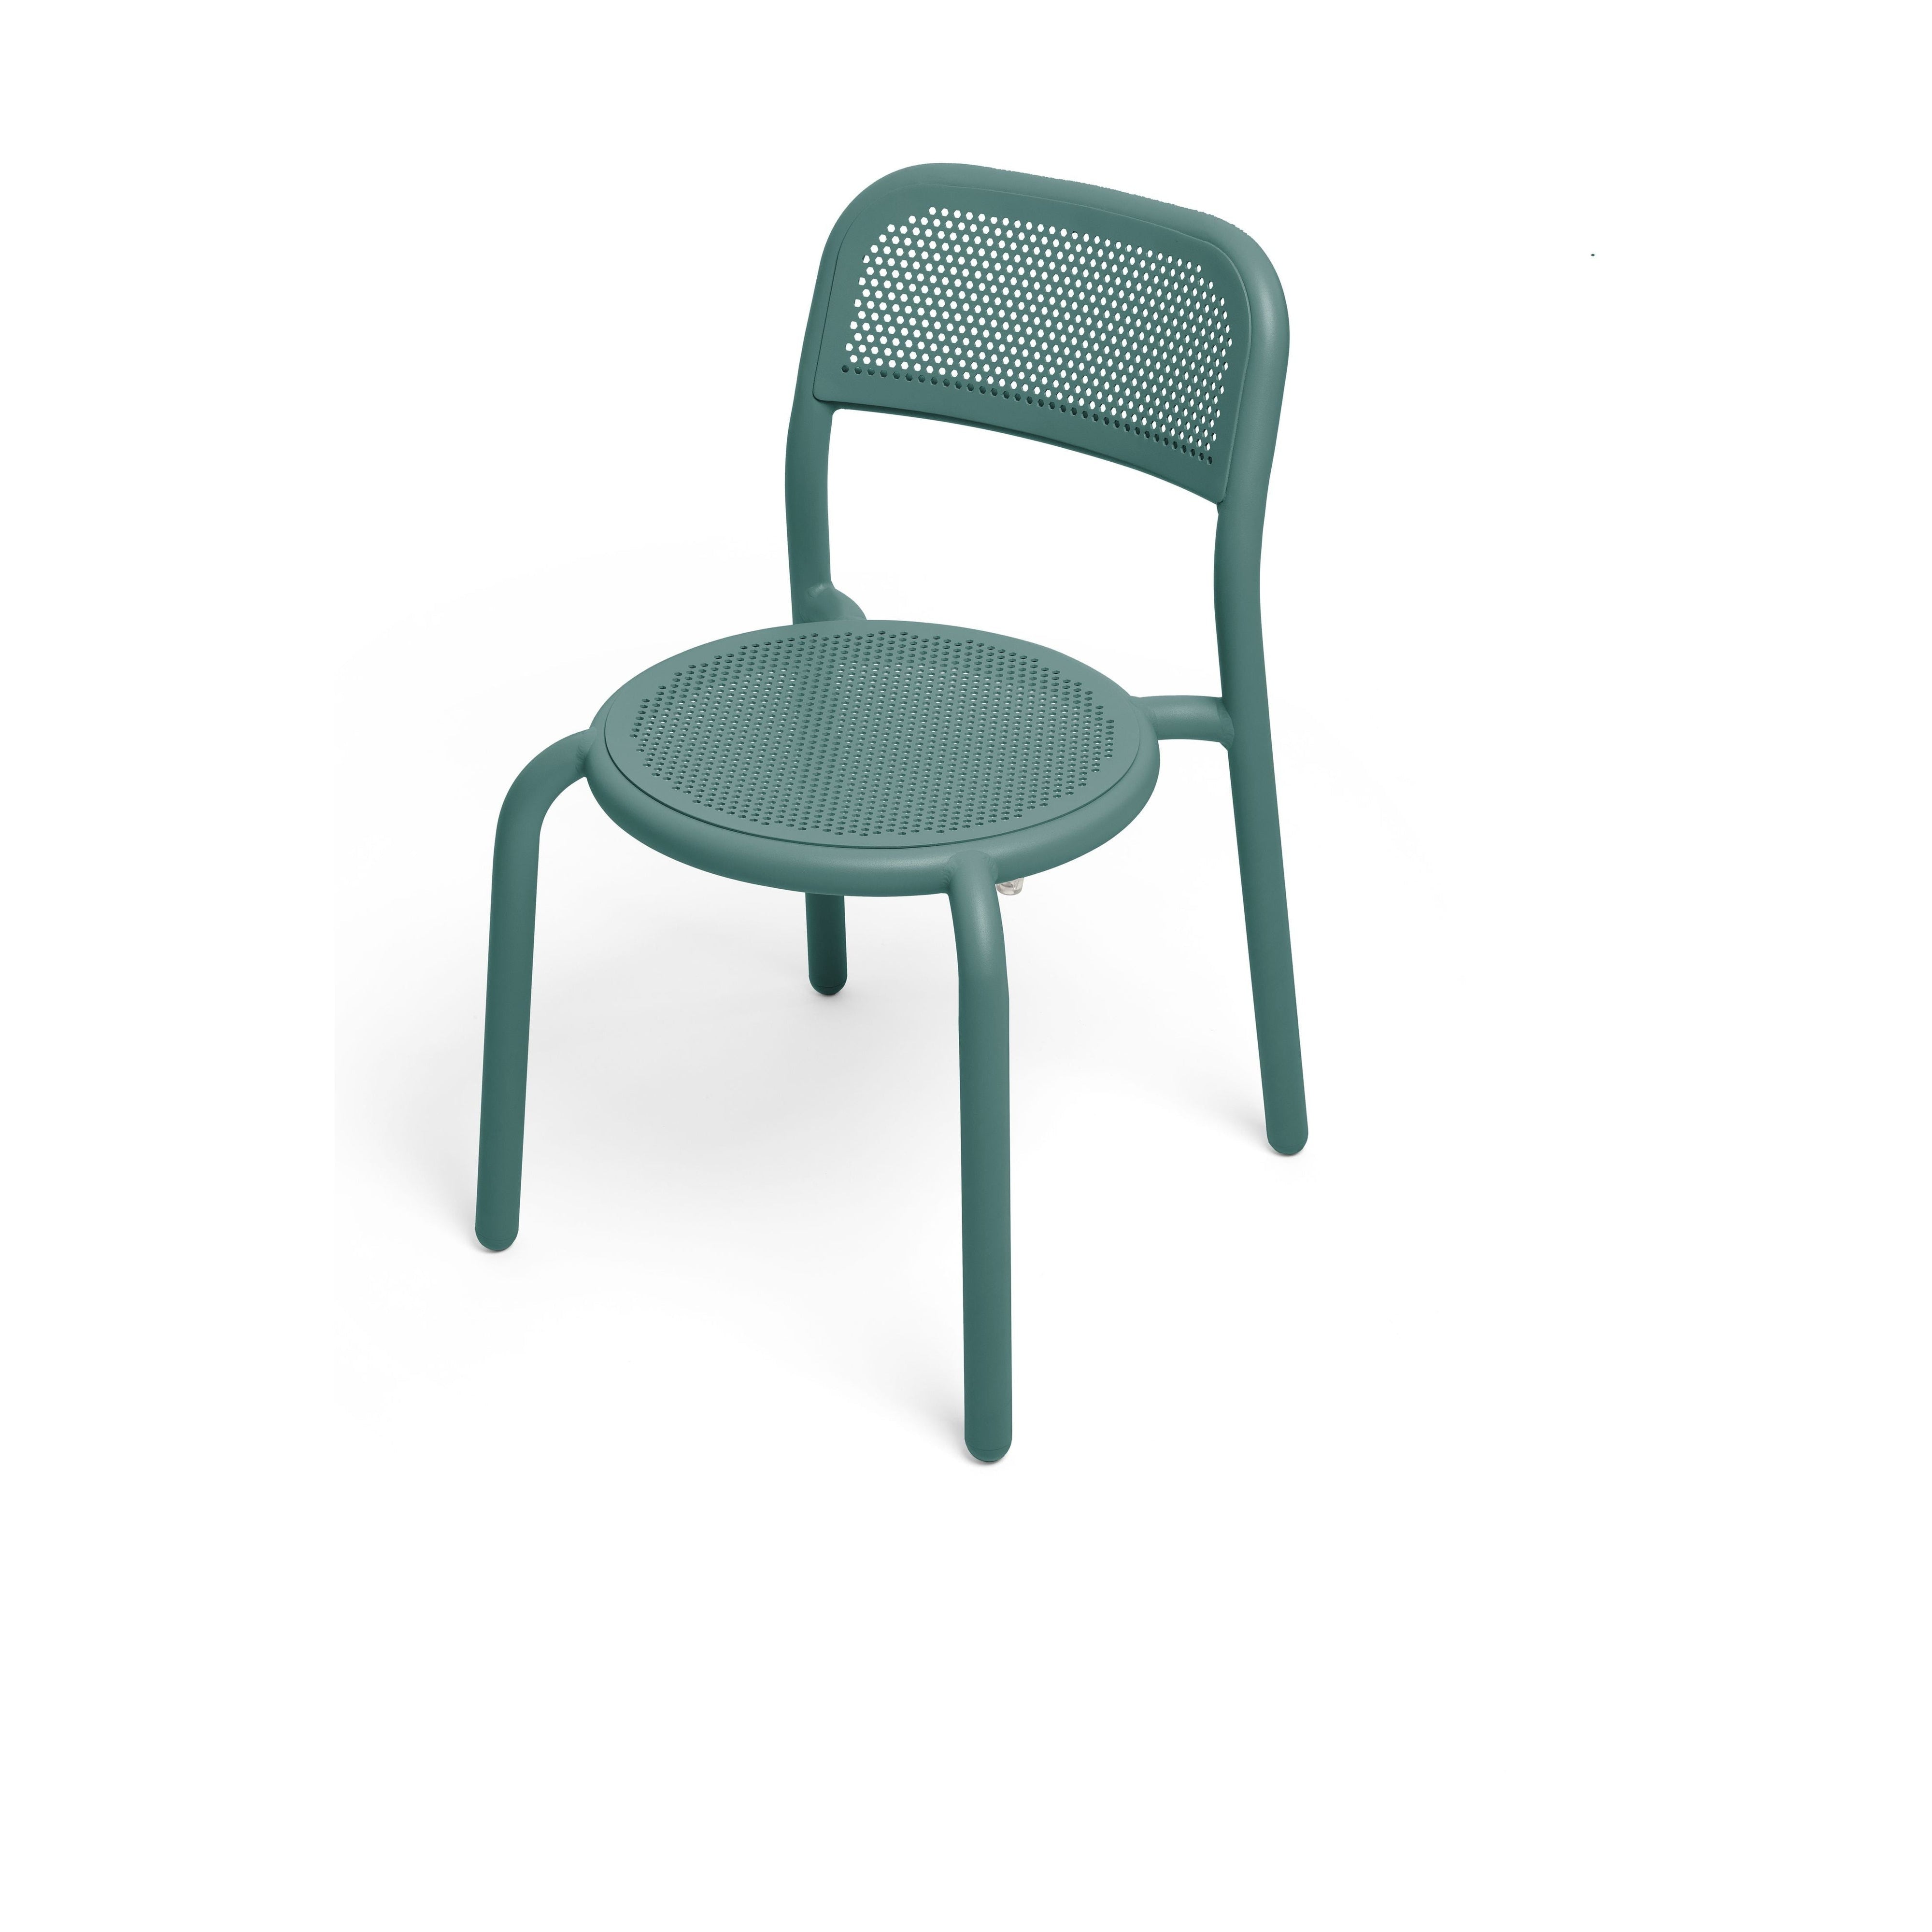 FatboyToní椅子绿色，2个。